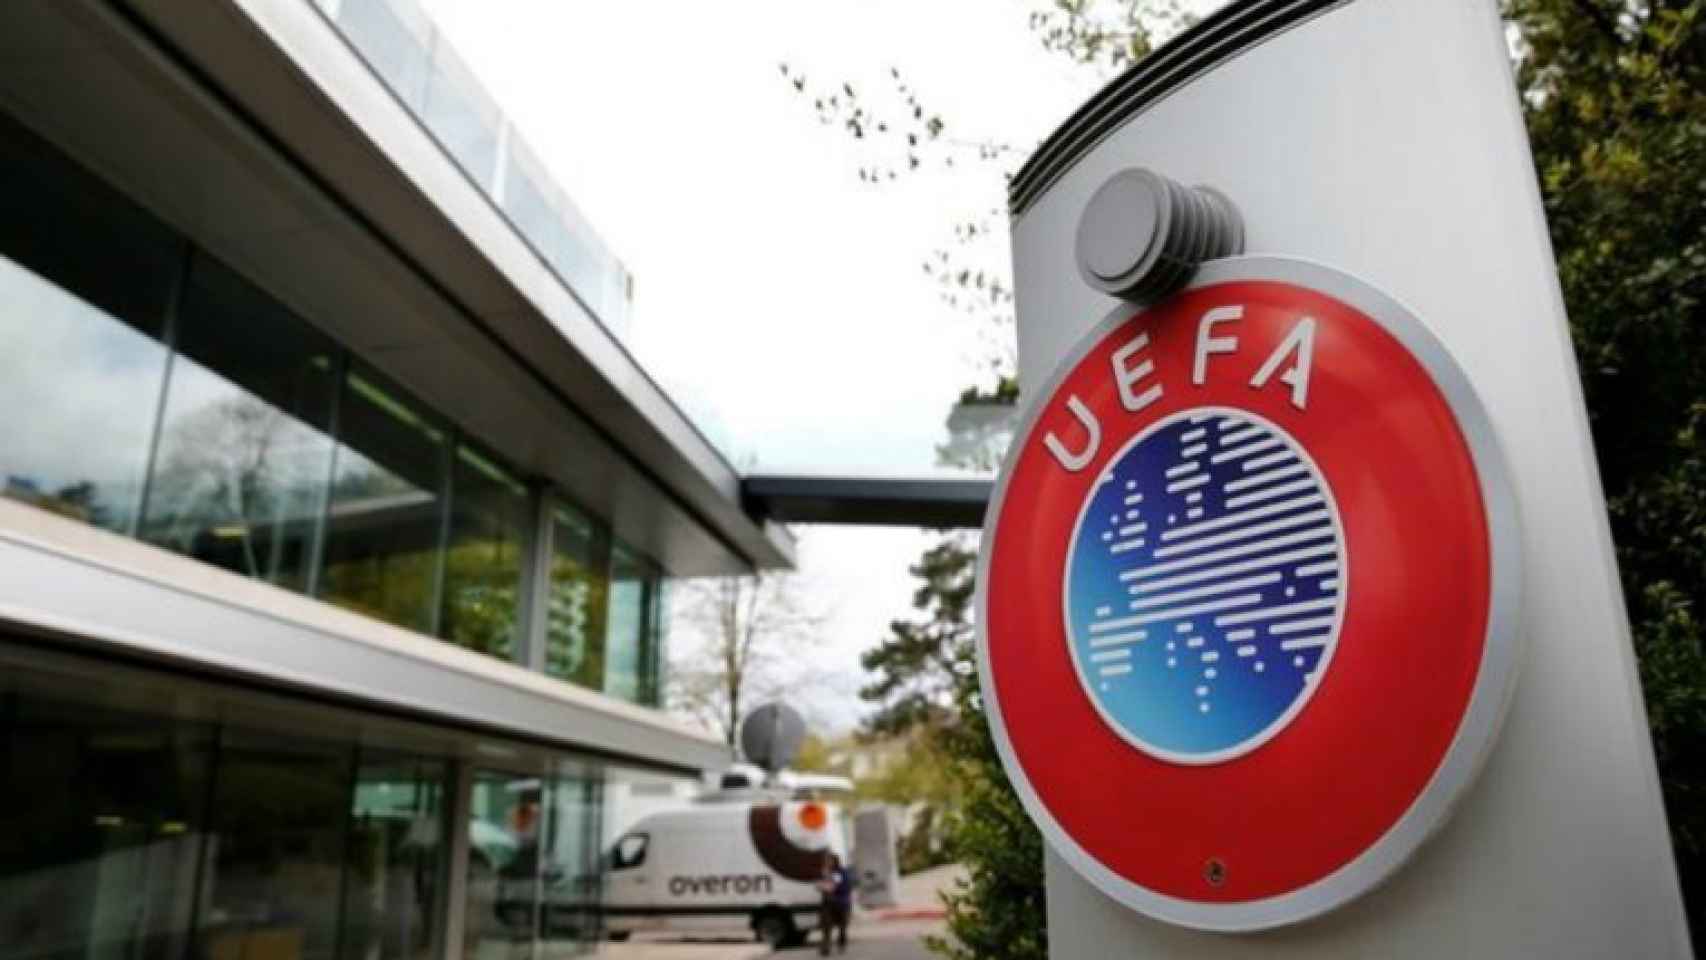 La sede de la UEFA en Nyon, Suiza